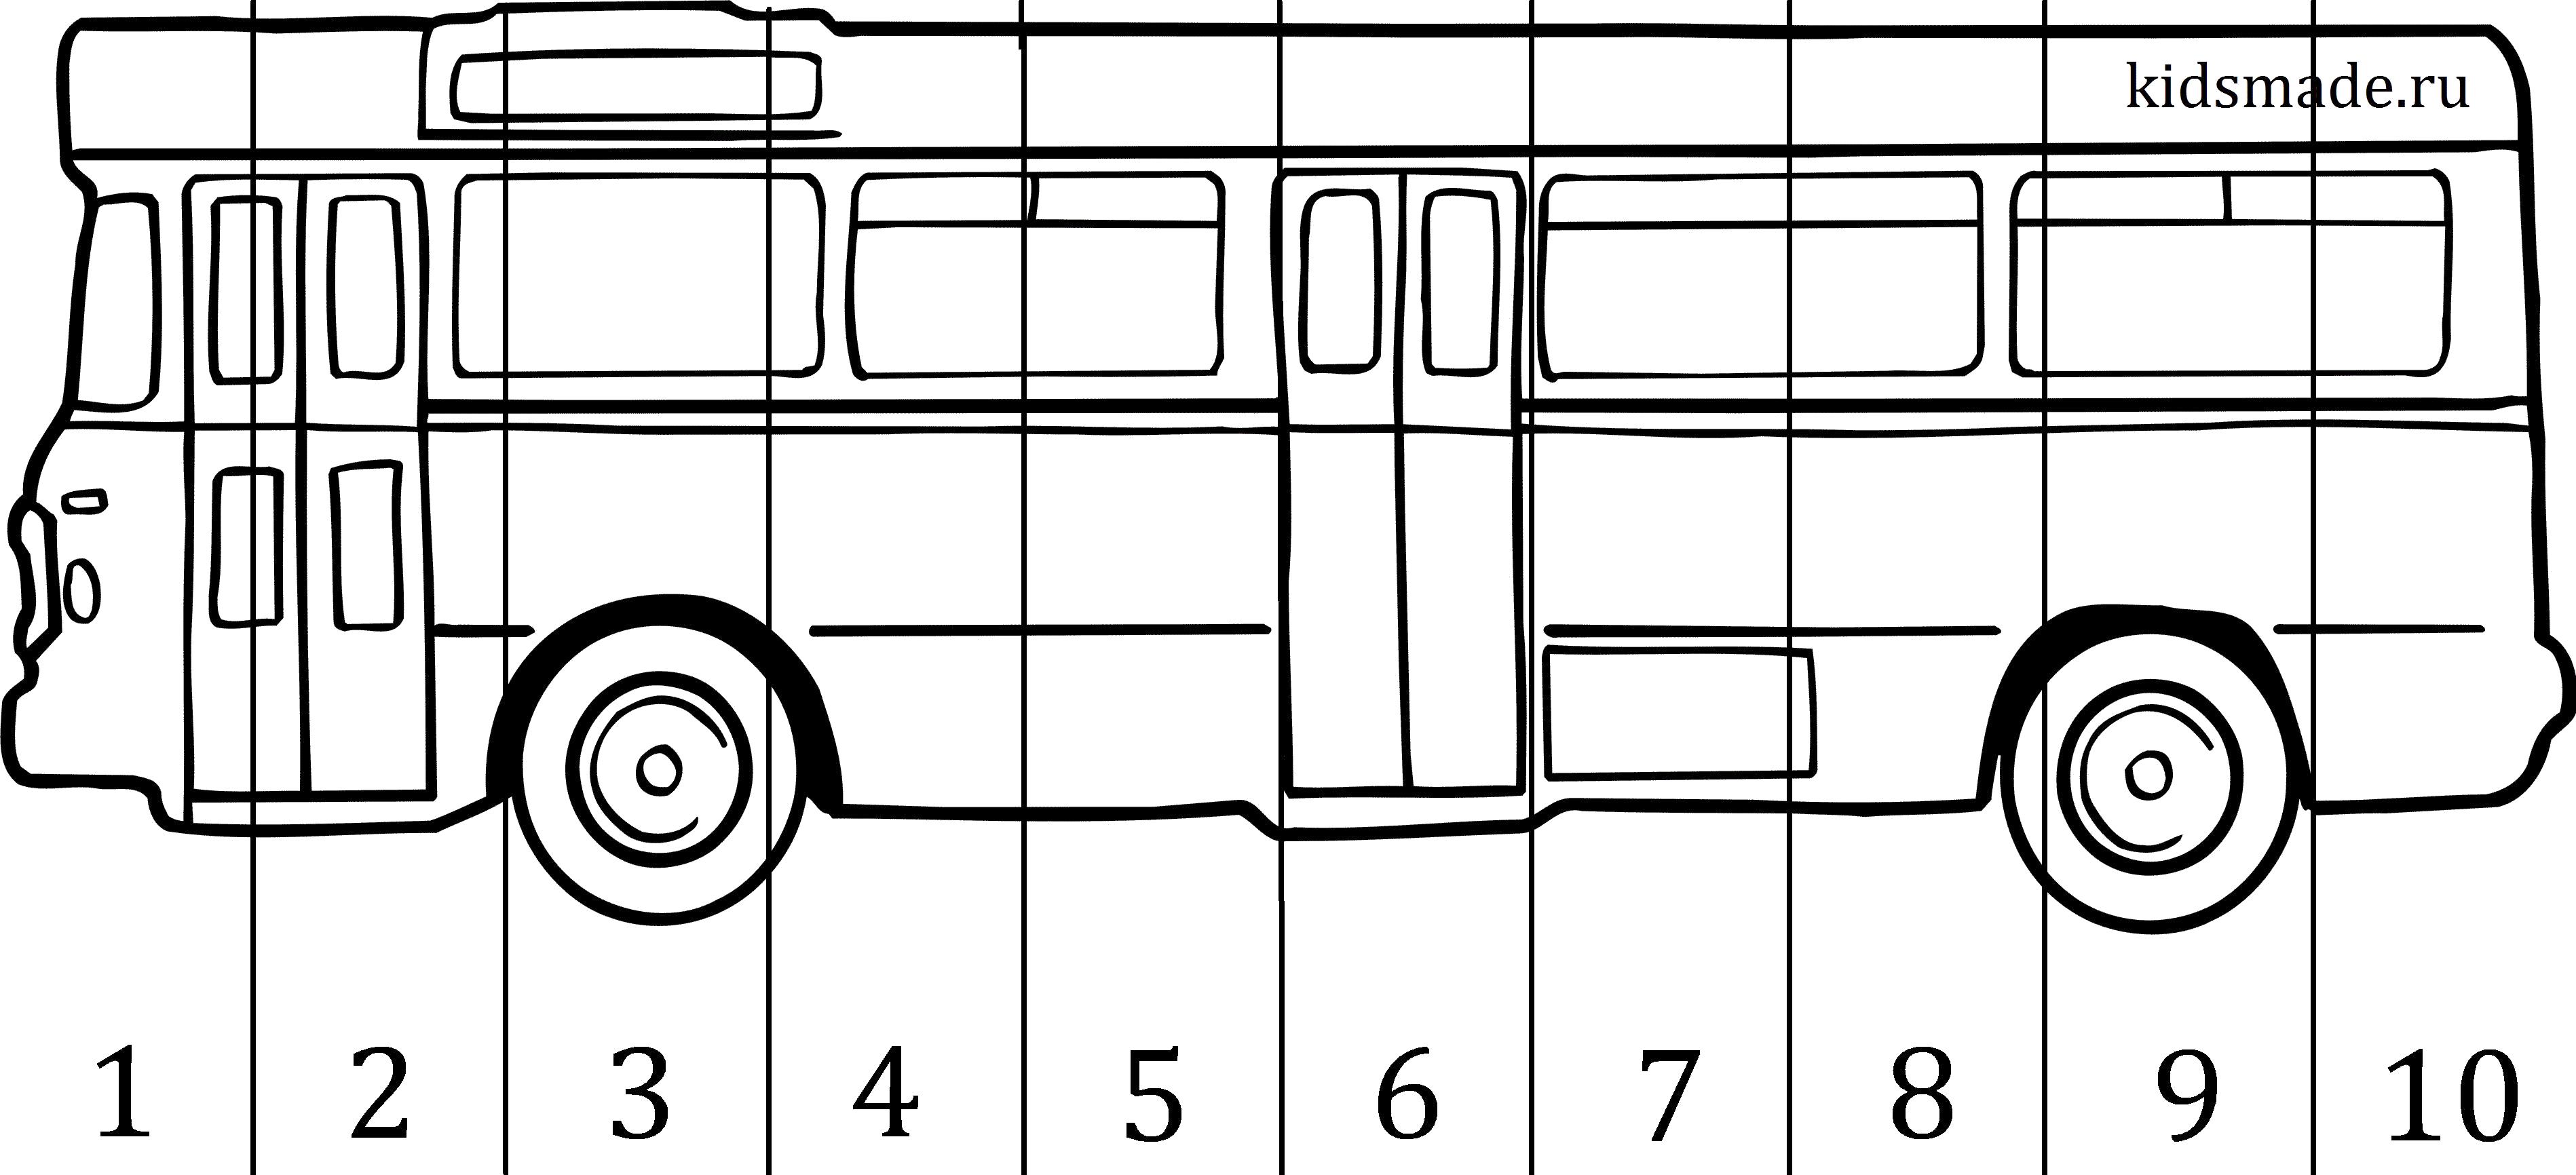 Разрезная картинка автобус